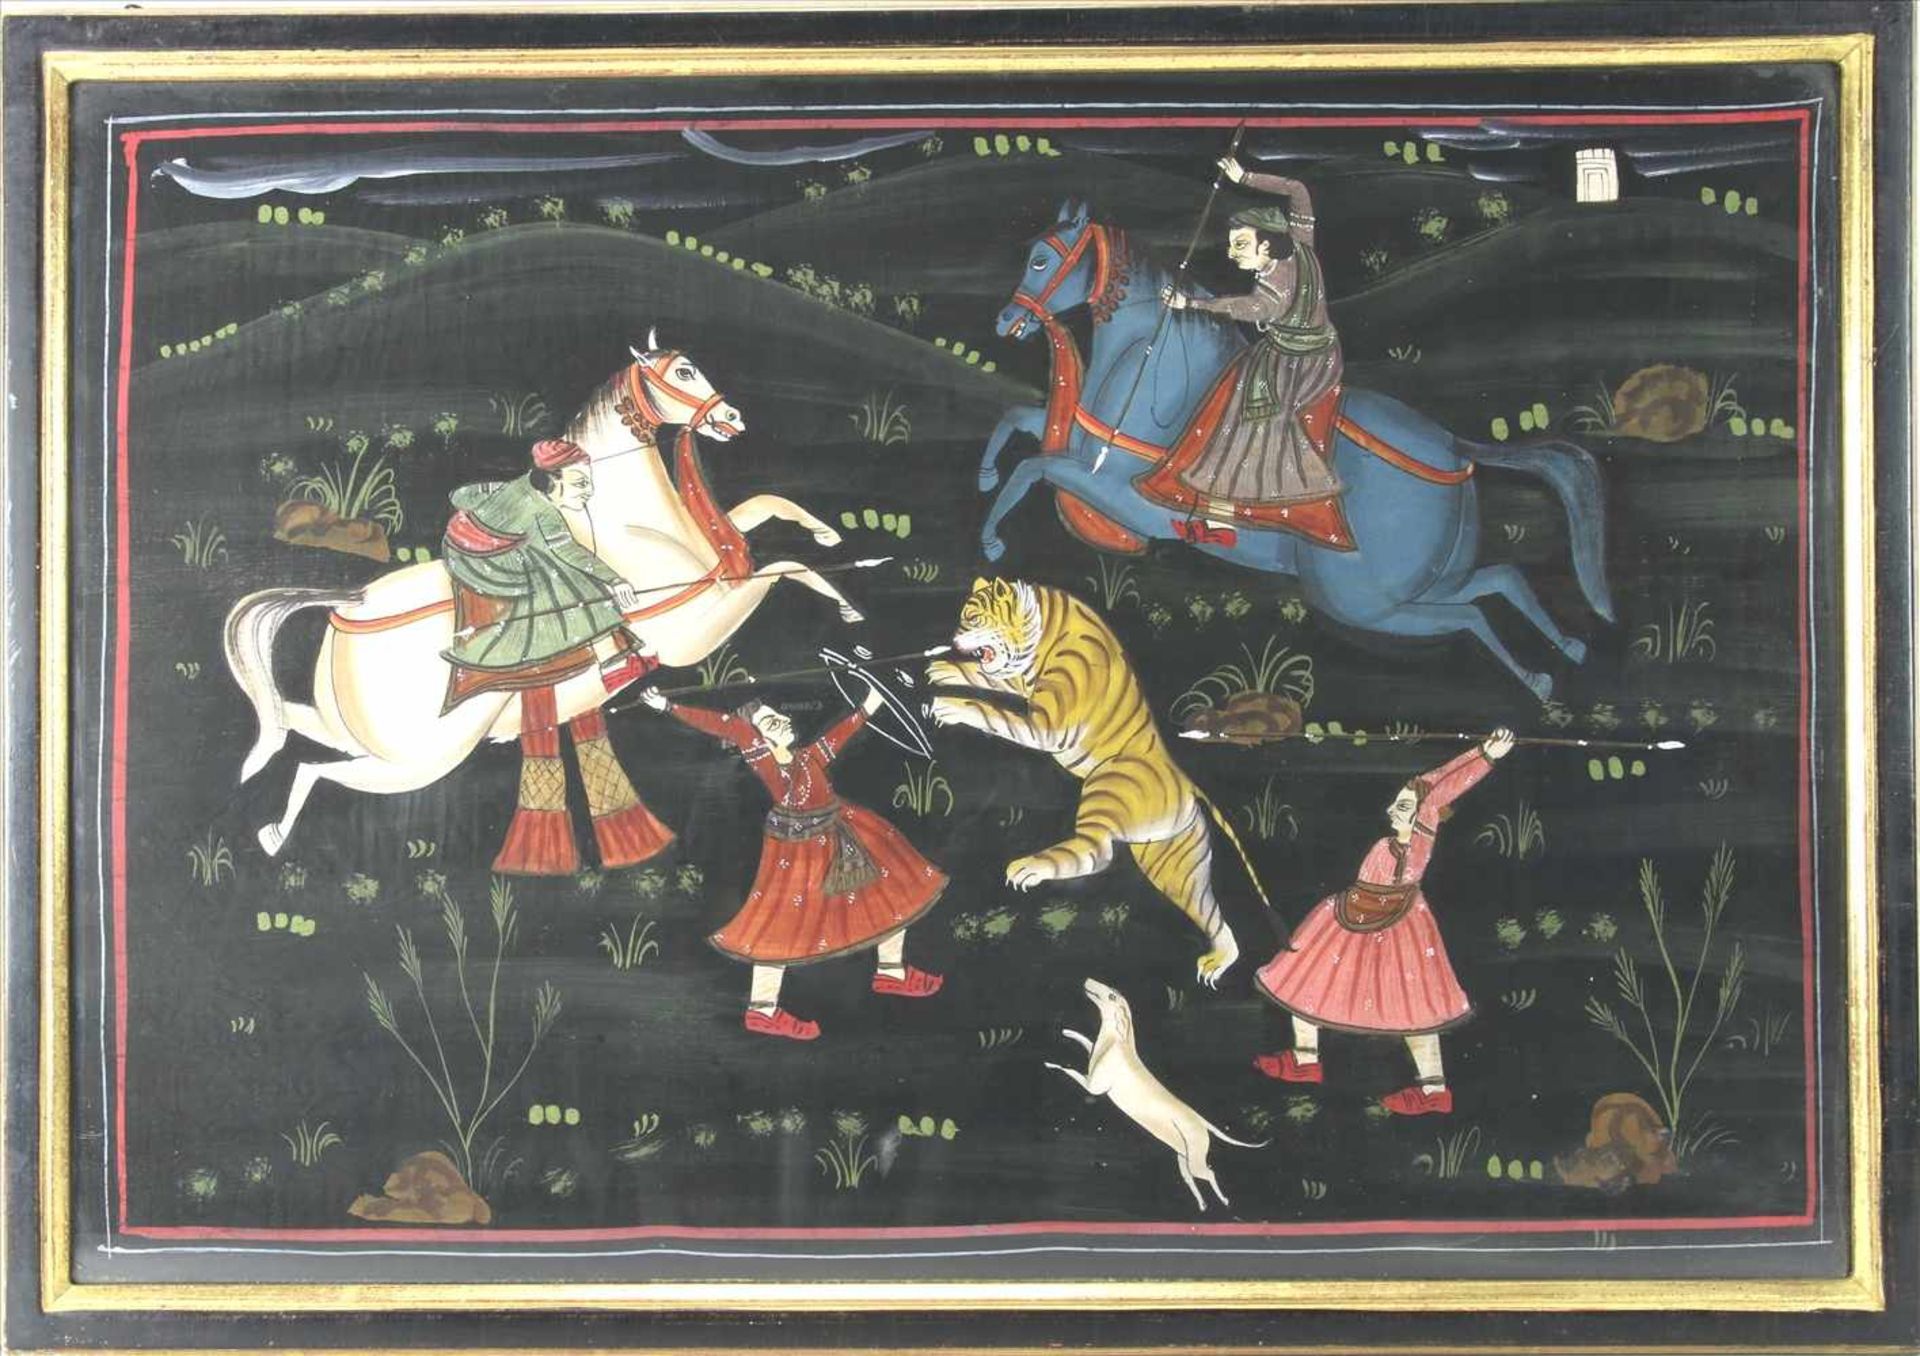 Indo-persische Jagdszene19. Jh. Vier Figuren, zwei davon beritten, im Kampf mit einem Tiger vor